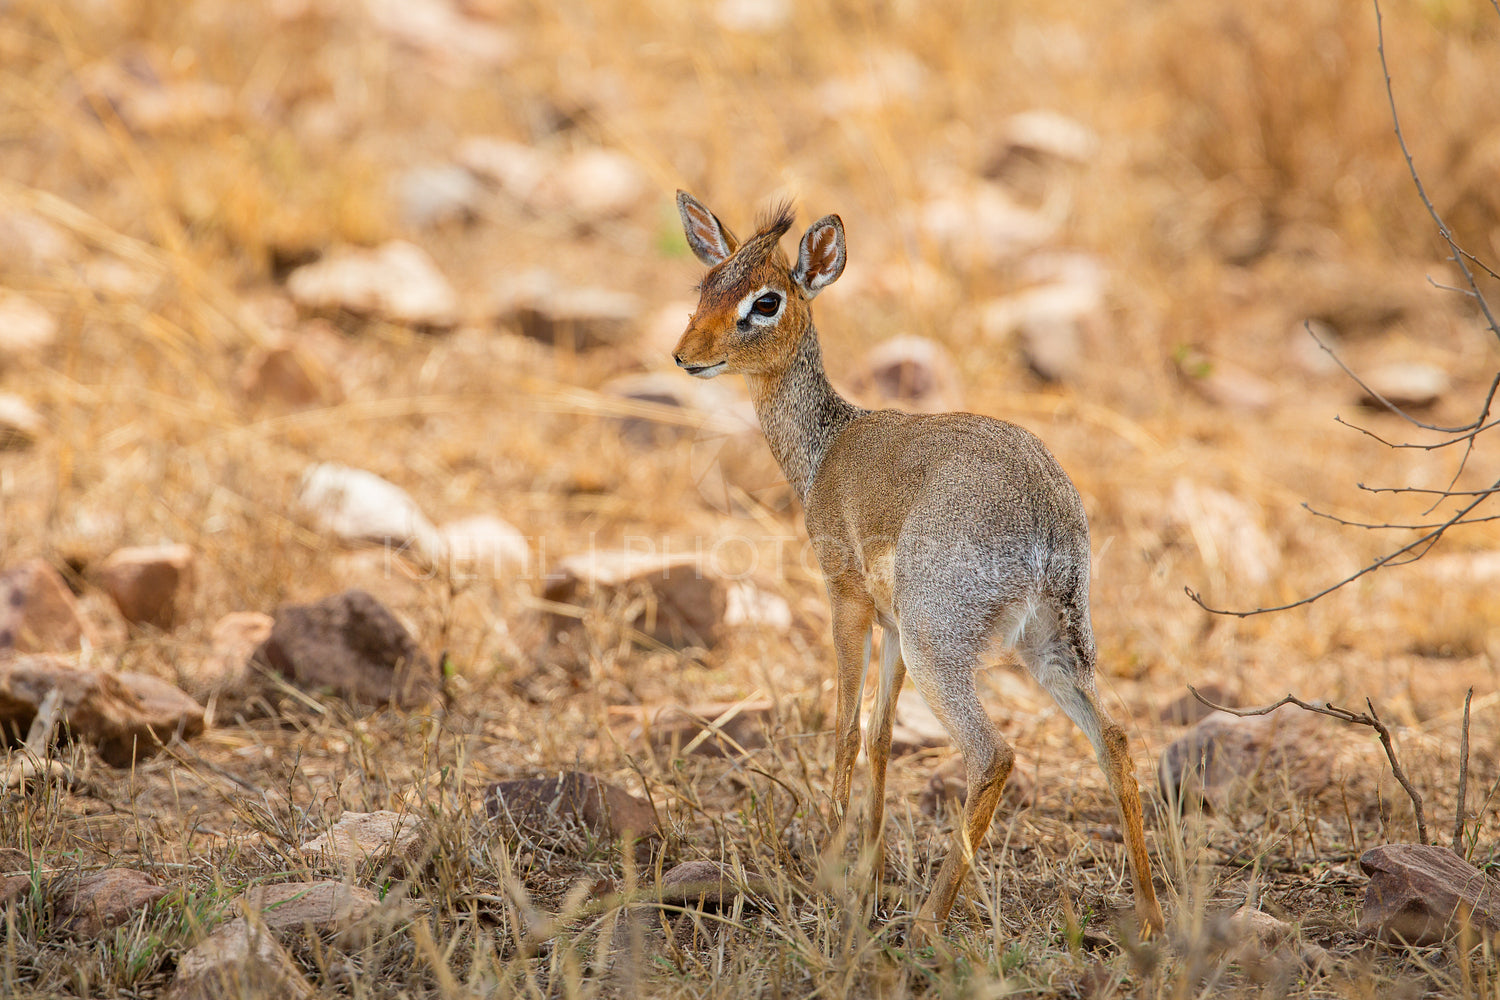 Dik-dik Antelope on African Safari in Natural Habitat